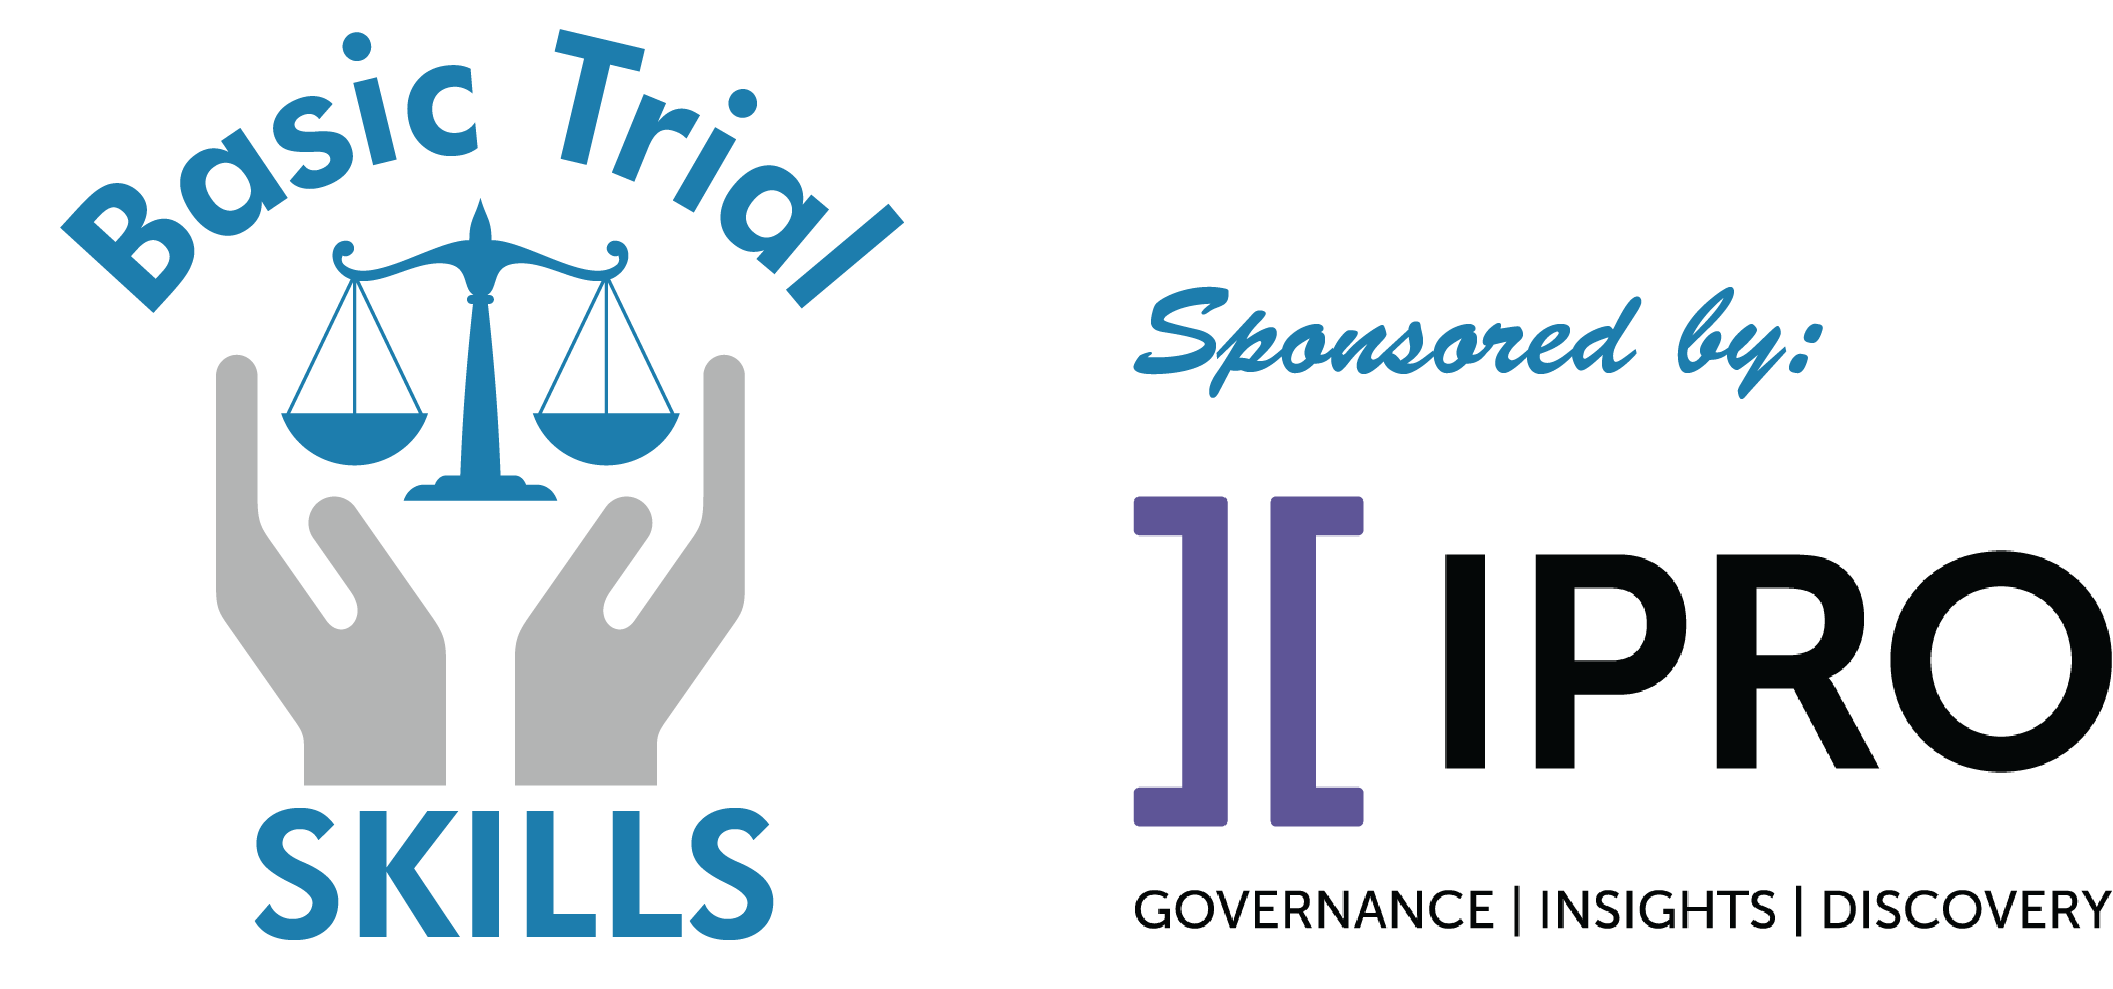 Basic Trial Skills logo with IPRO logo